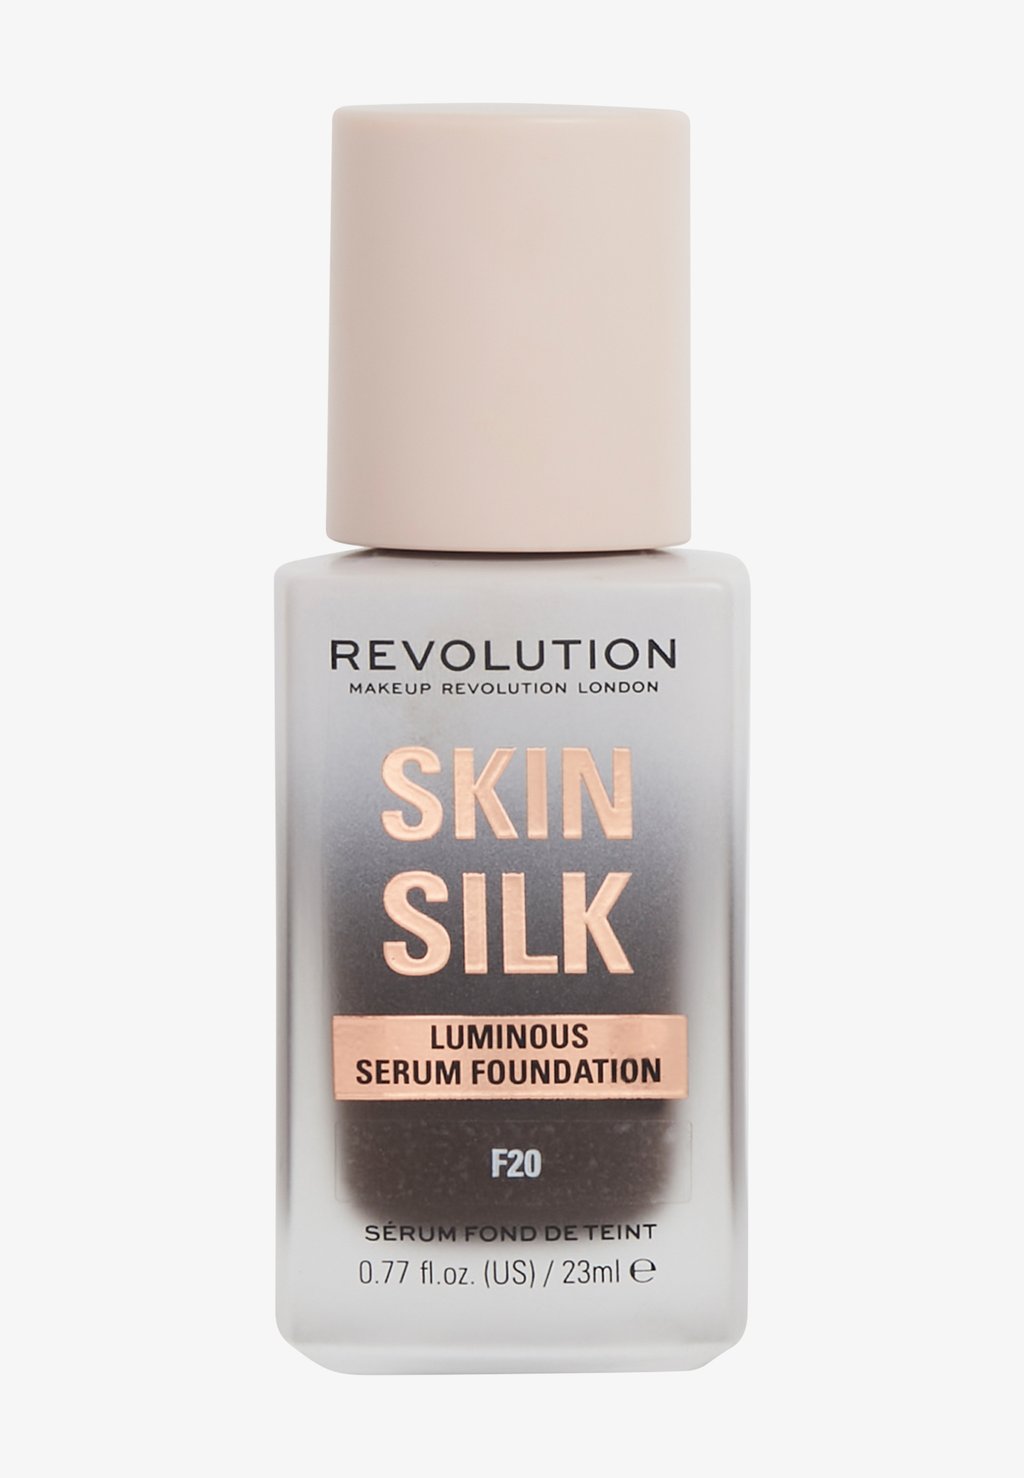 Тональная основа REVOLUTION SKIN SILK SERUM FOUNDATION Makeup Revolution, цвет f20